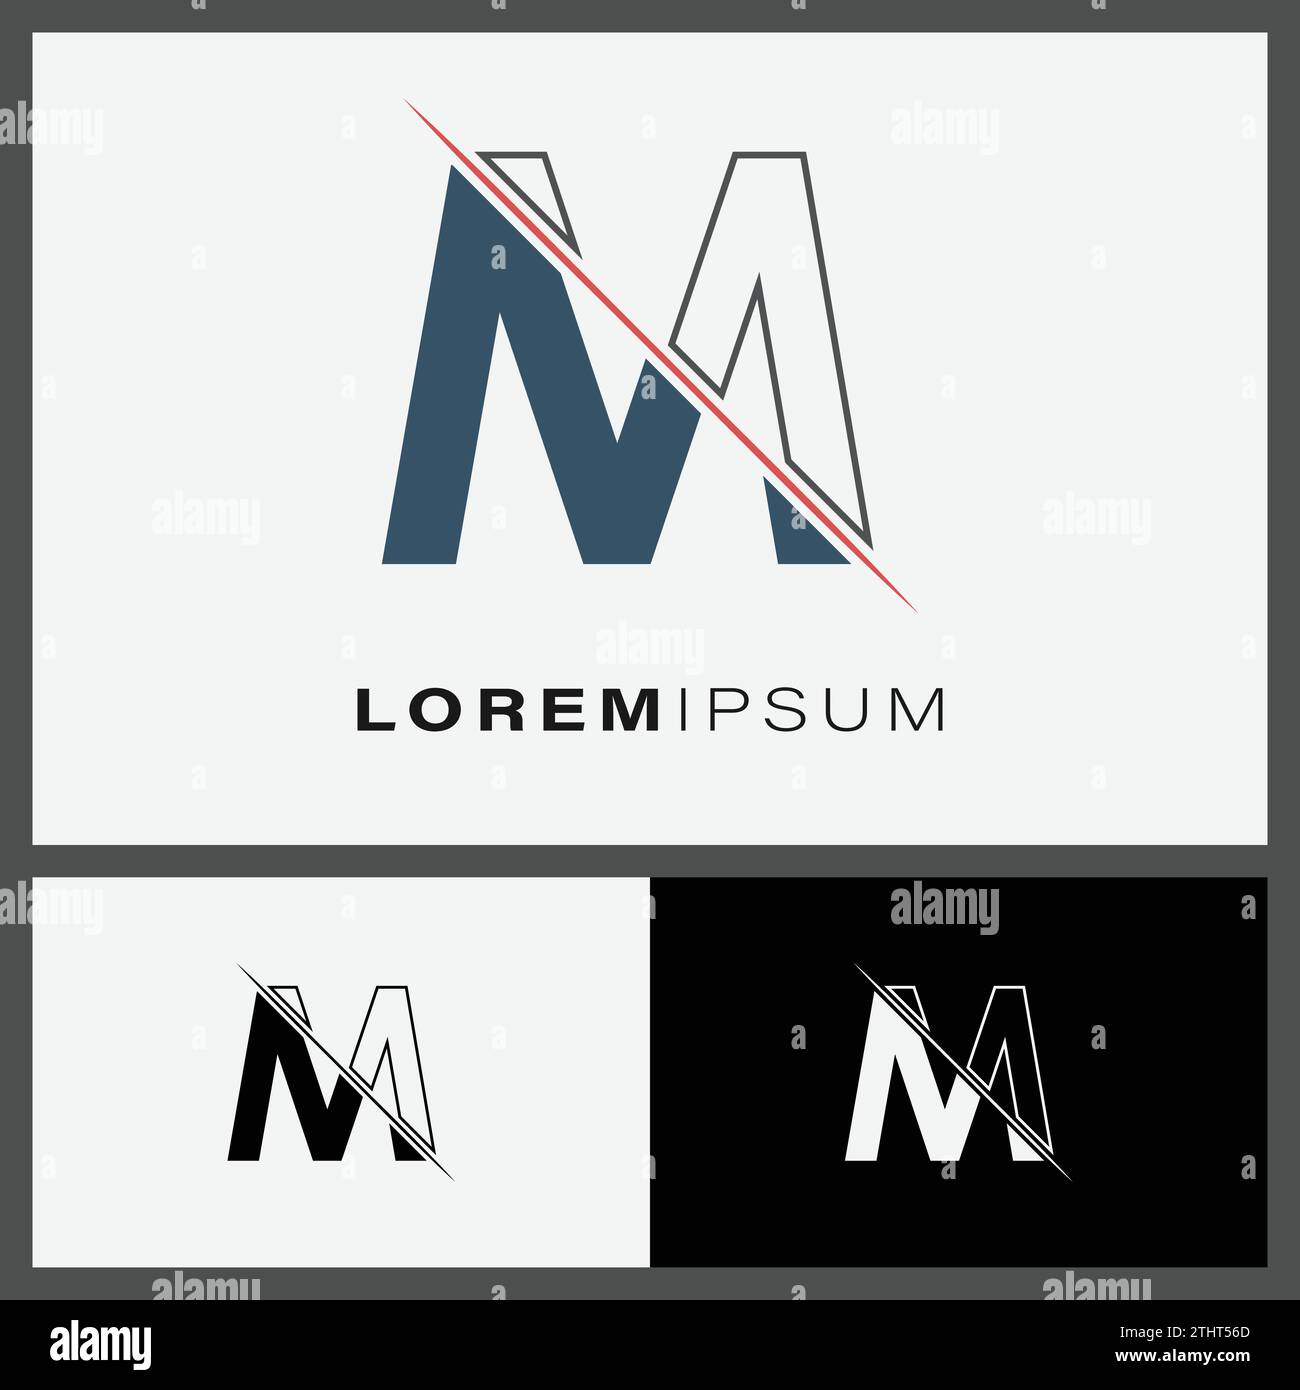 Logosymbol mit dem Buchstaben M und Linienschnitt in der Mitte. Kreatives Monogramm-Logo mit Buchstabe M. Design-Vorlage für Fashion-Icons Stock Vektor